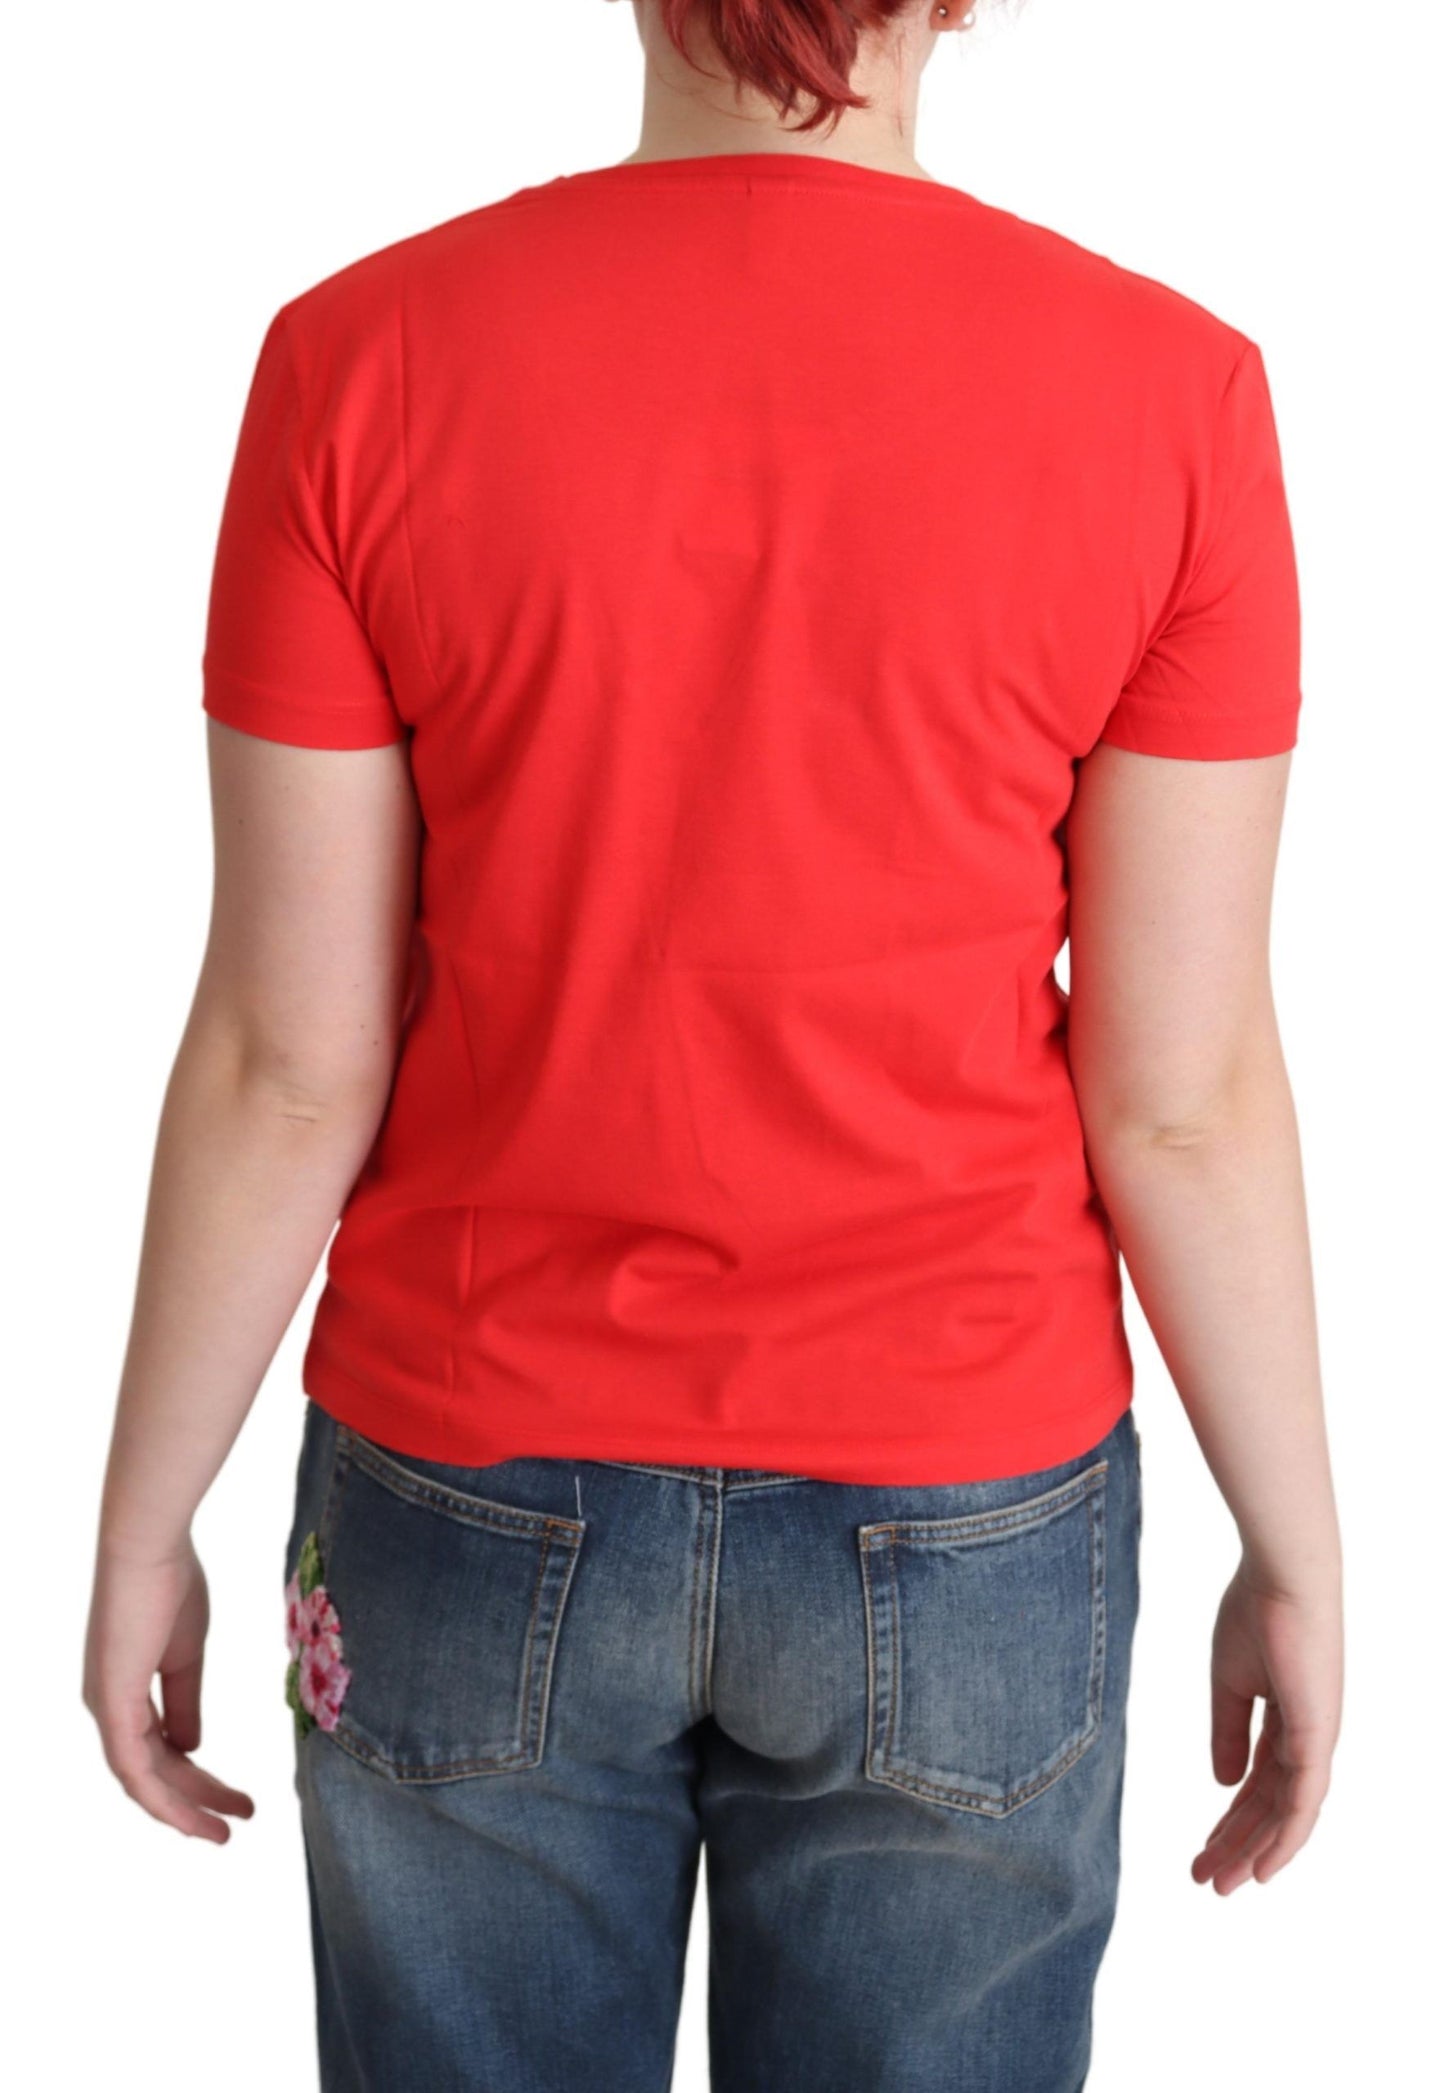 Moschino Rot bedrucktes Baumwoll Kurzärmel Tops Bluse T-Shirt